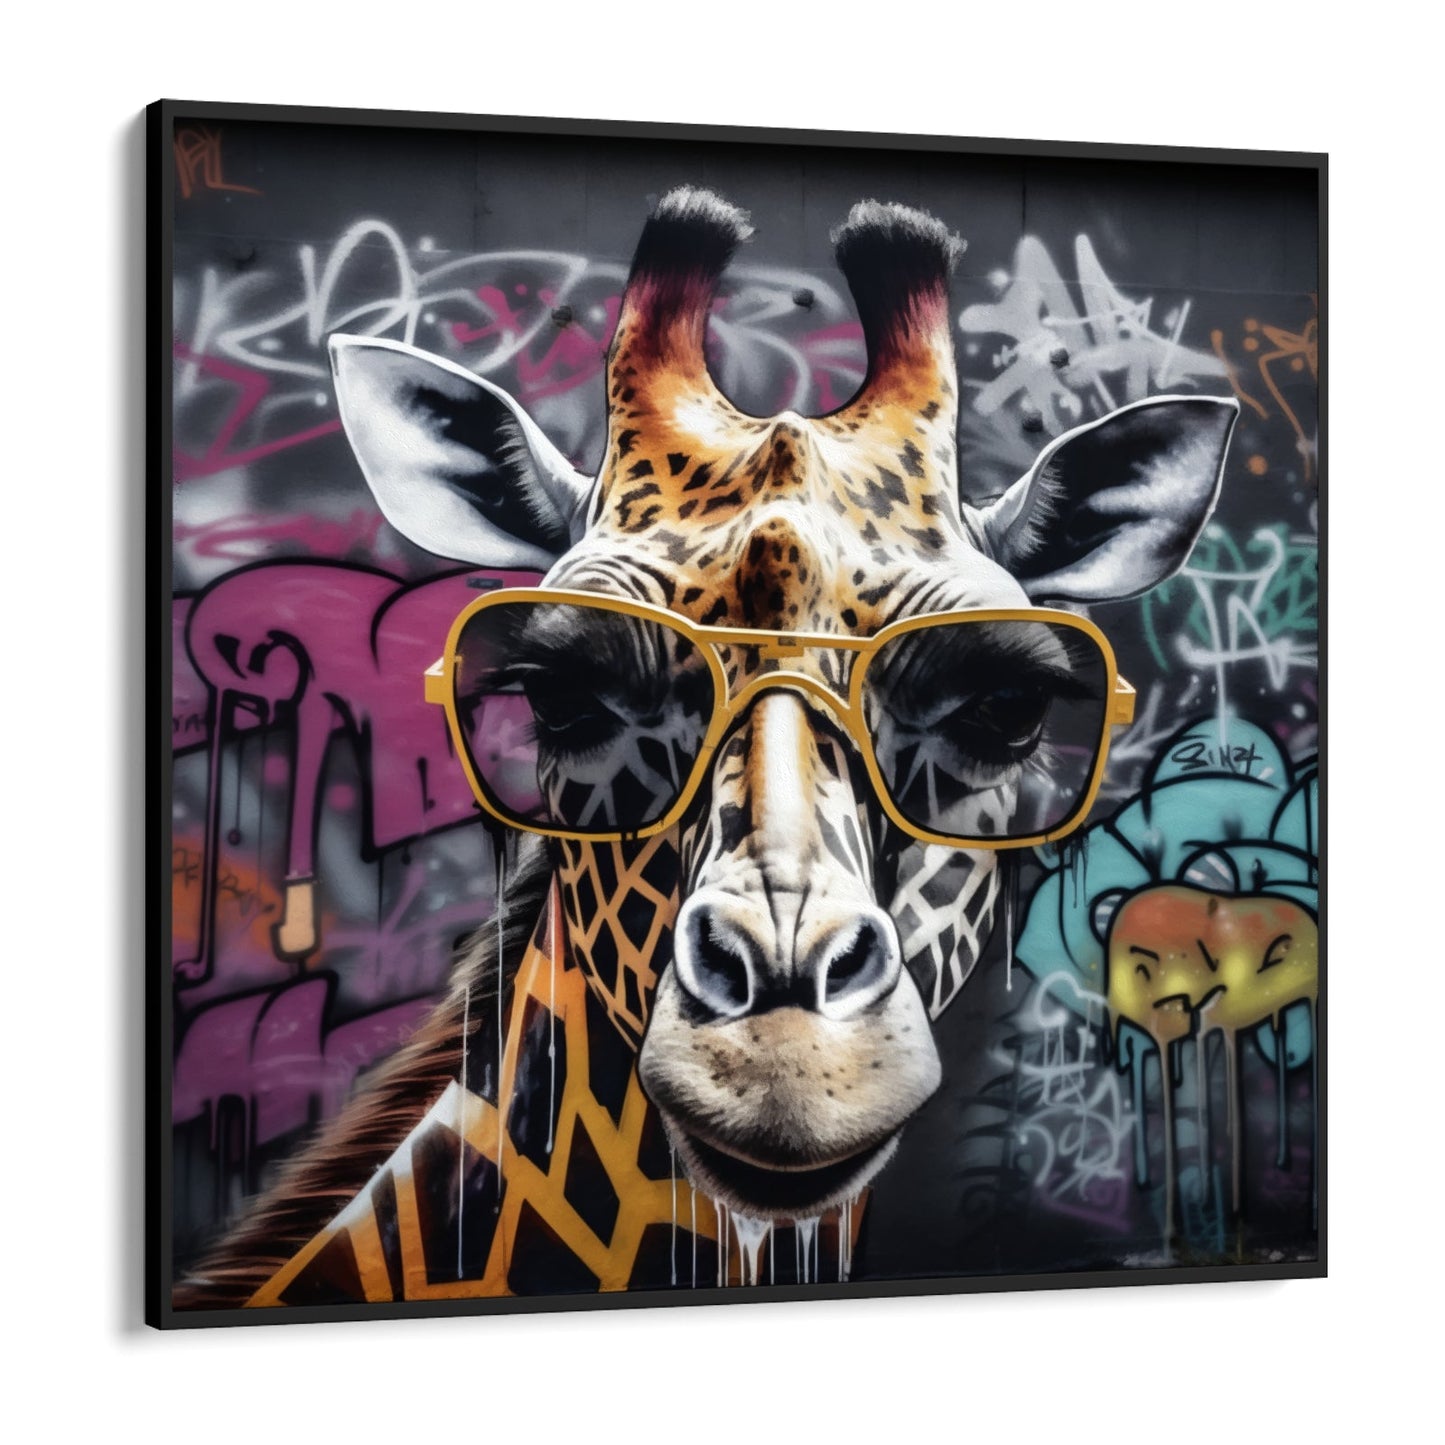 Giraffa Graffiti